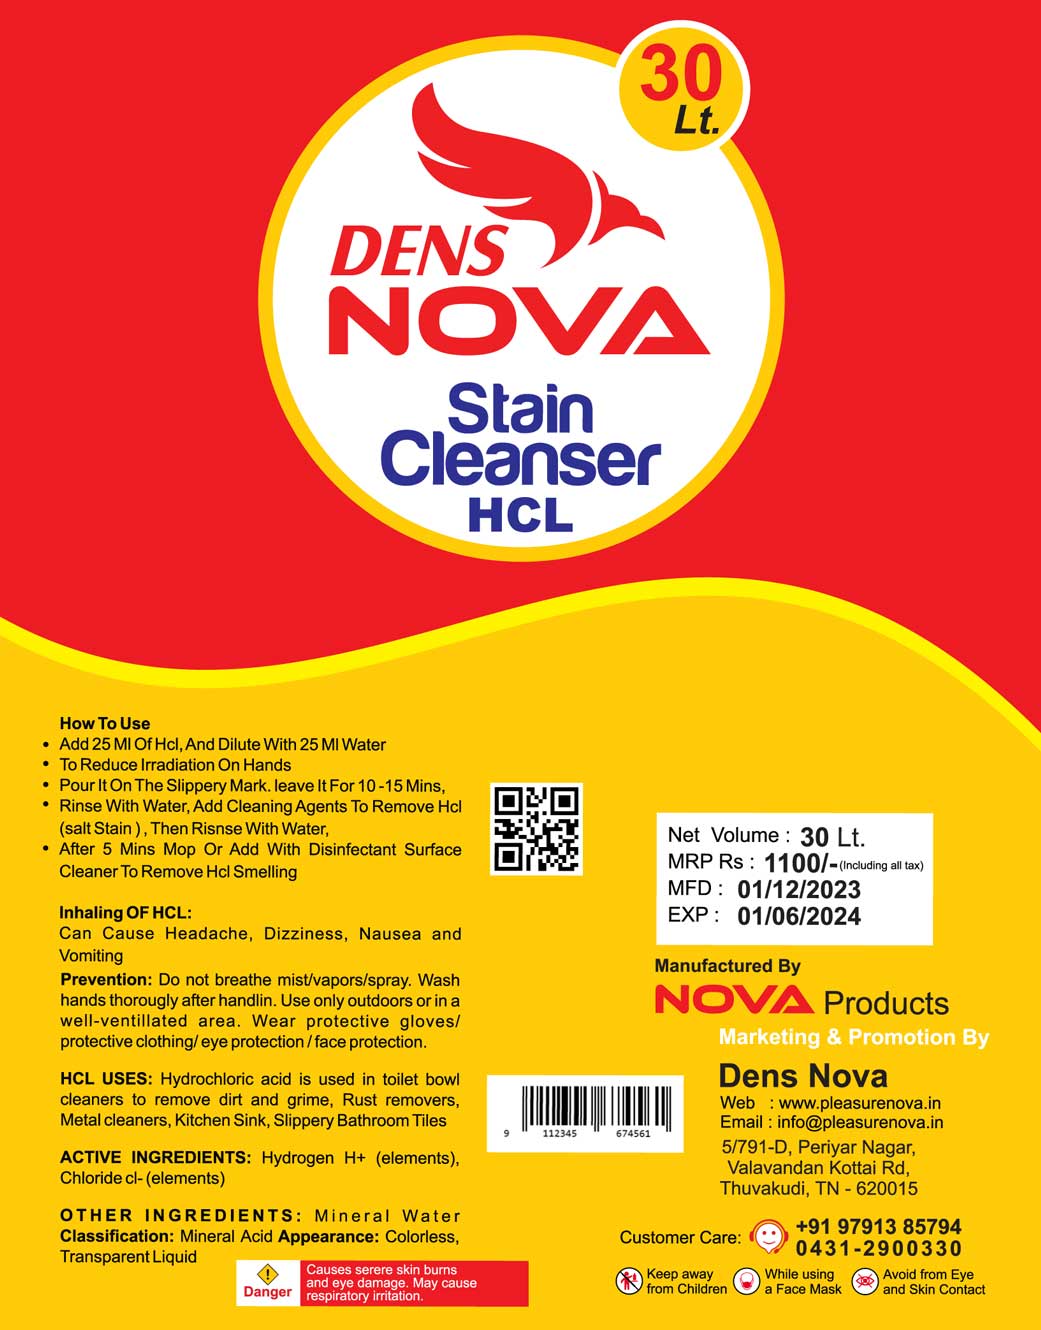 Dens Nova - Stain Cleanser HCL